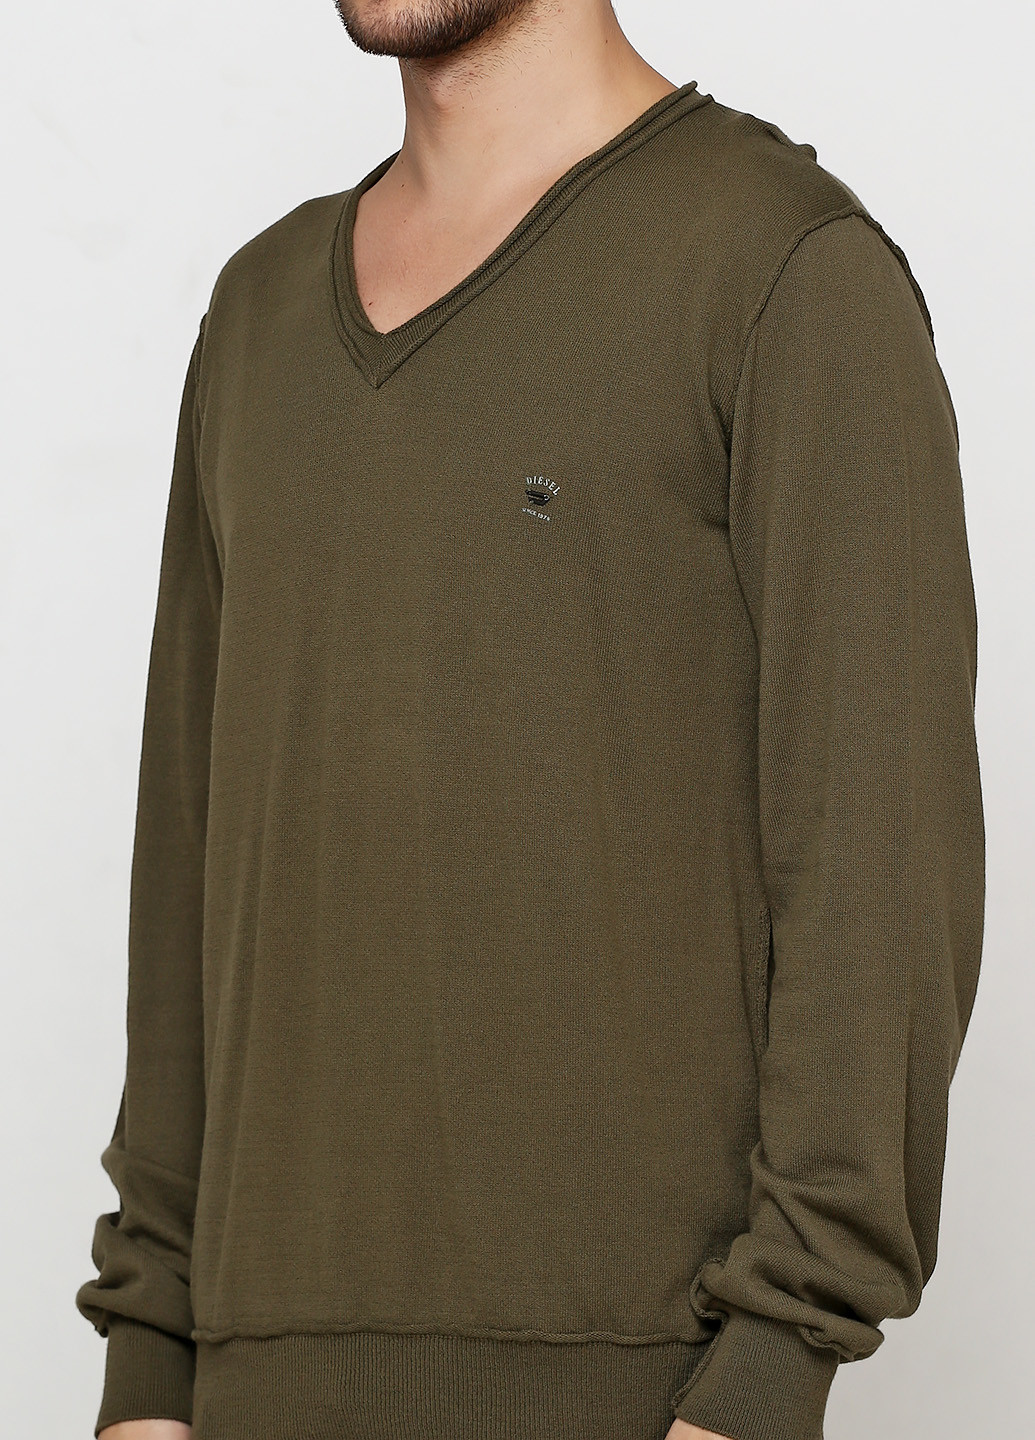 Оливковый (хаки) демисезонный пуловер пуловер Diesel